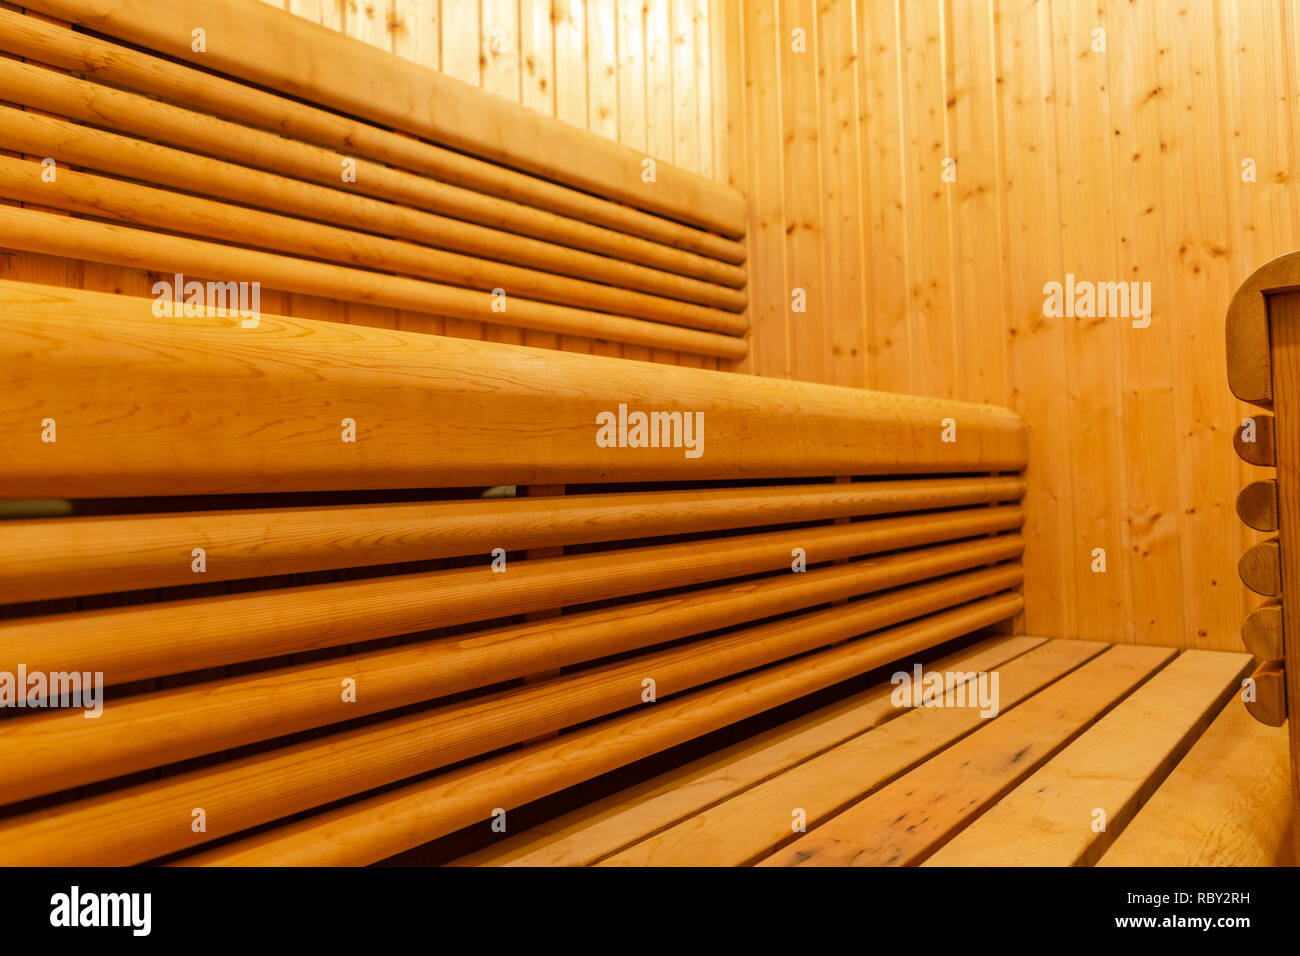 Innenraum der Finnischen Sauna, im klassischen Holz- Sauna, finnische Bad. Holz- Sauna. Zimmer aus Holz. Sauna Dampf. Stockfoto